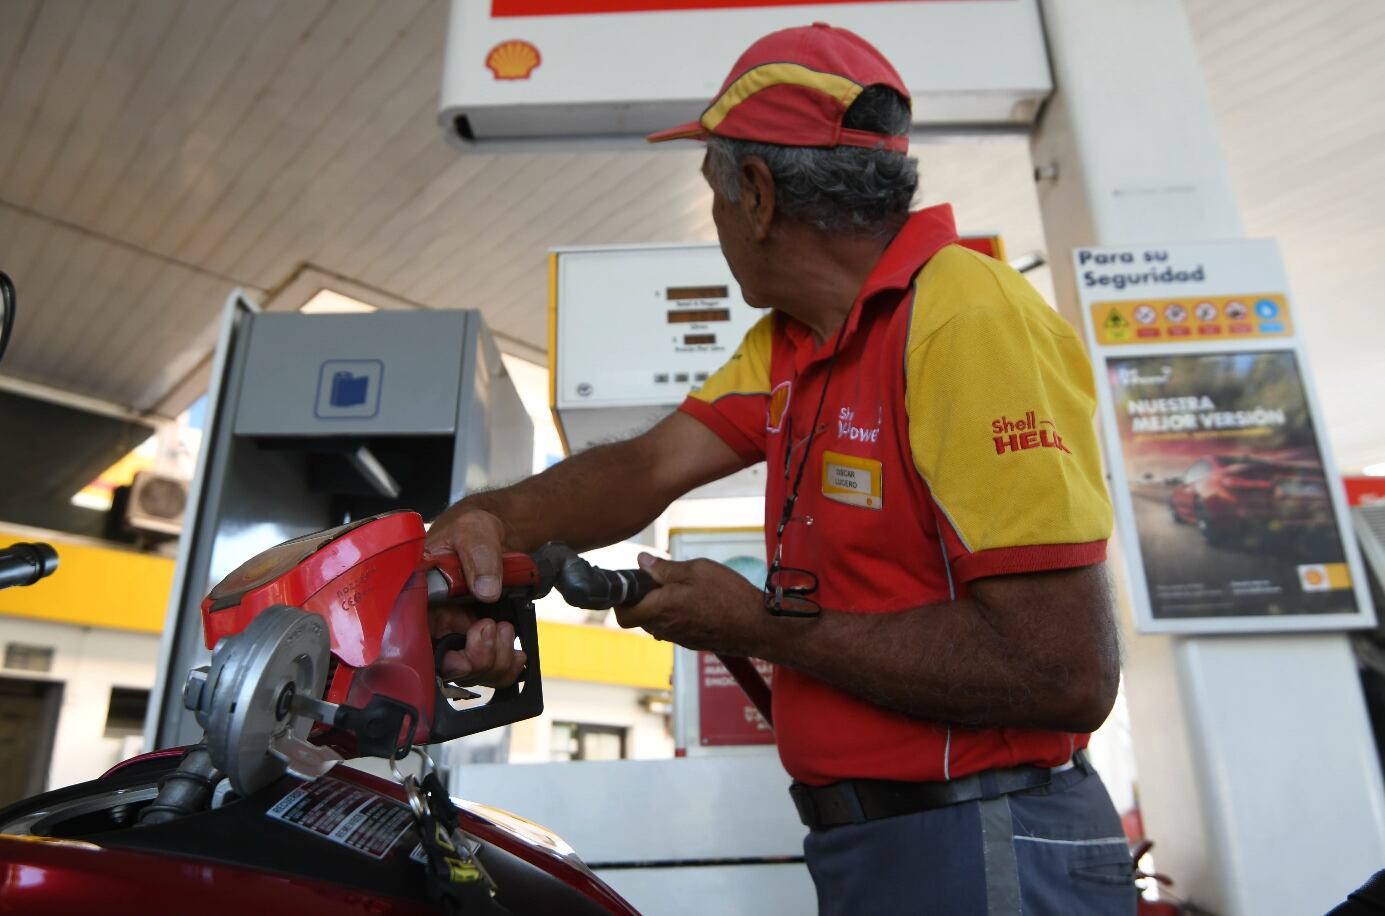  El incremento de los precios se hará efectivo desde las 0 del martes. Foto:Jose Gutierrez / Los Andes 